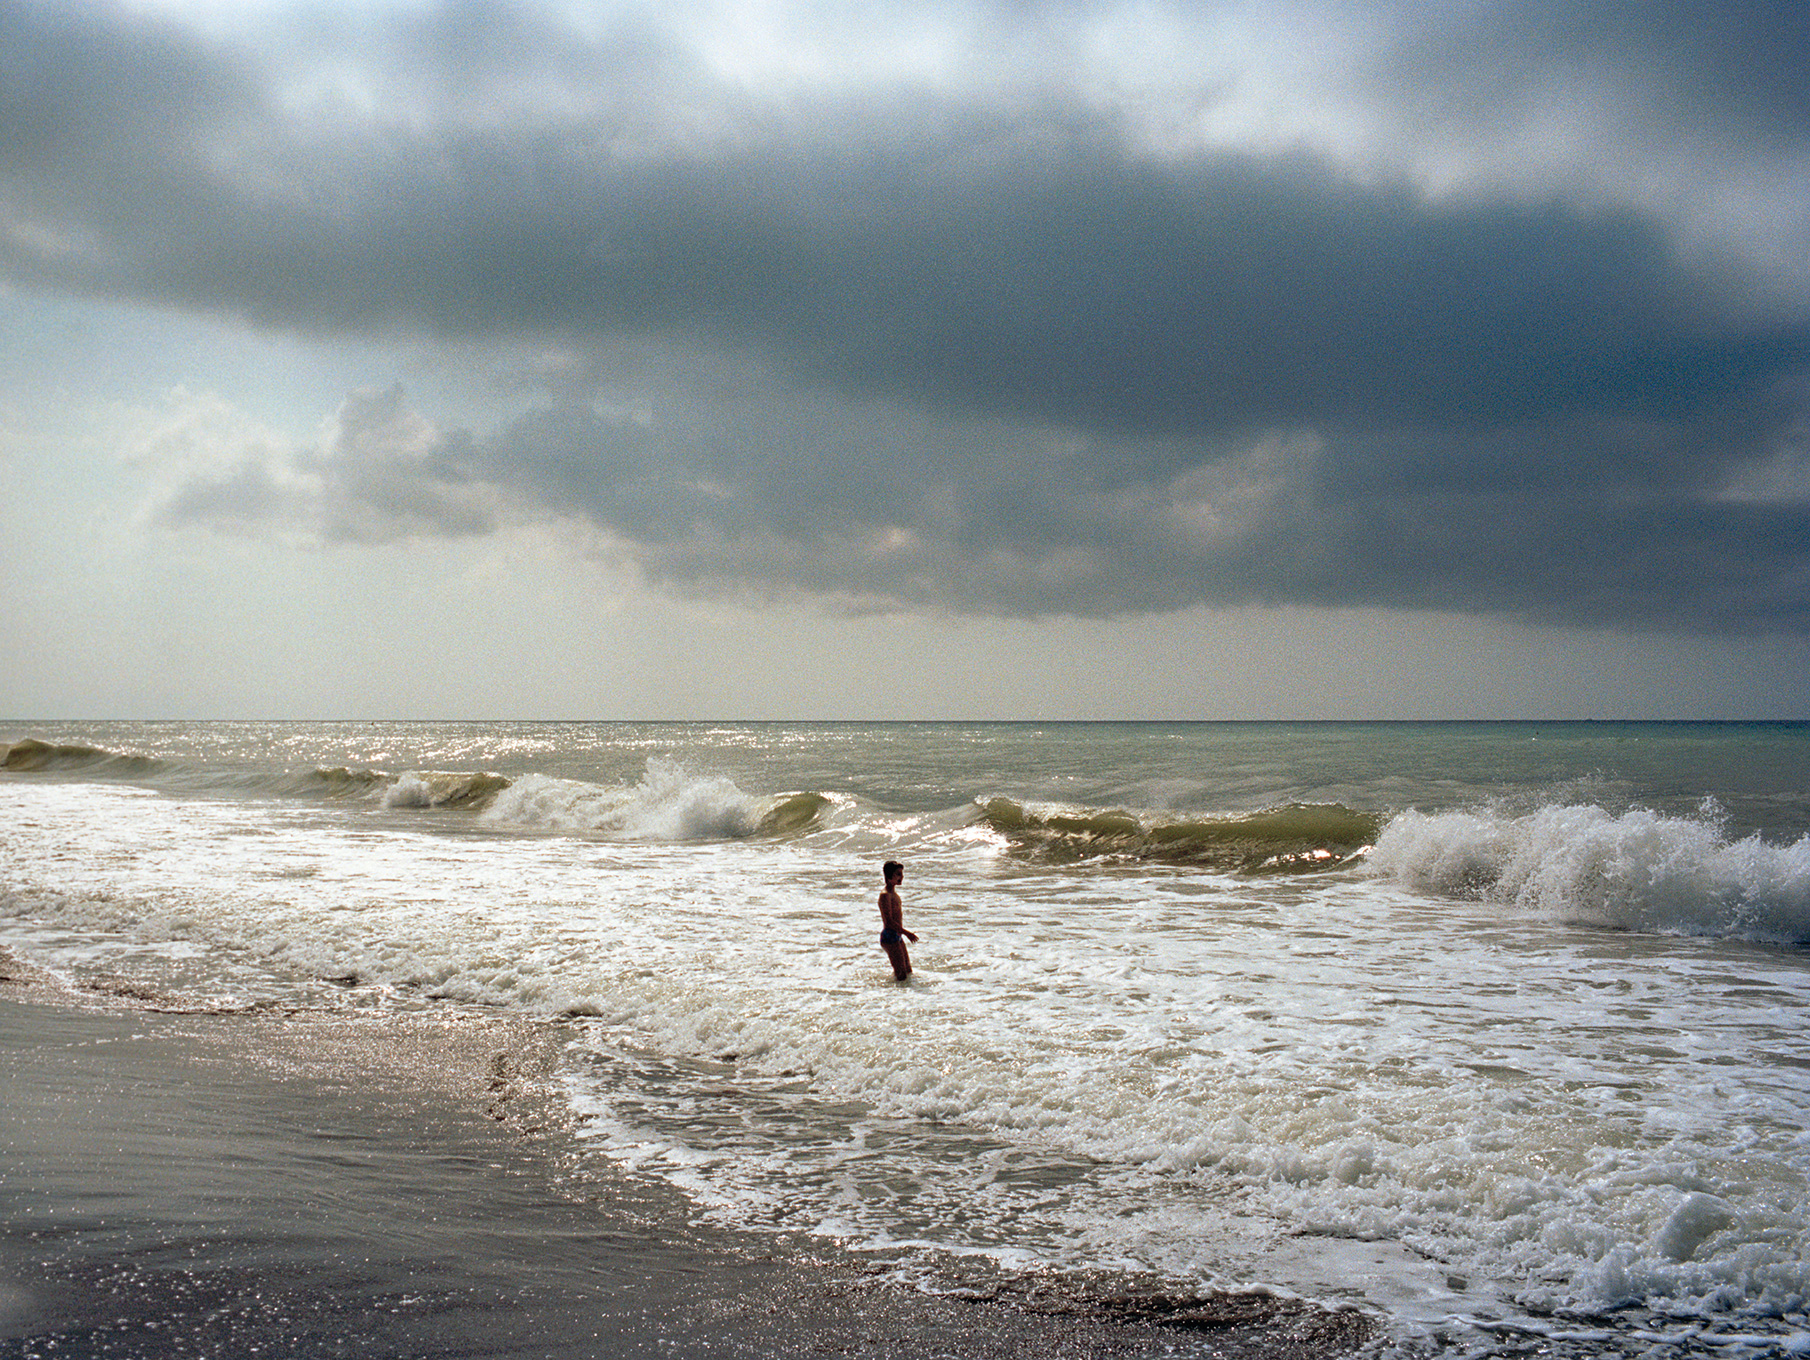   Boy on the beach,  Forte dei Marmi, Italy, 2011  